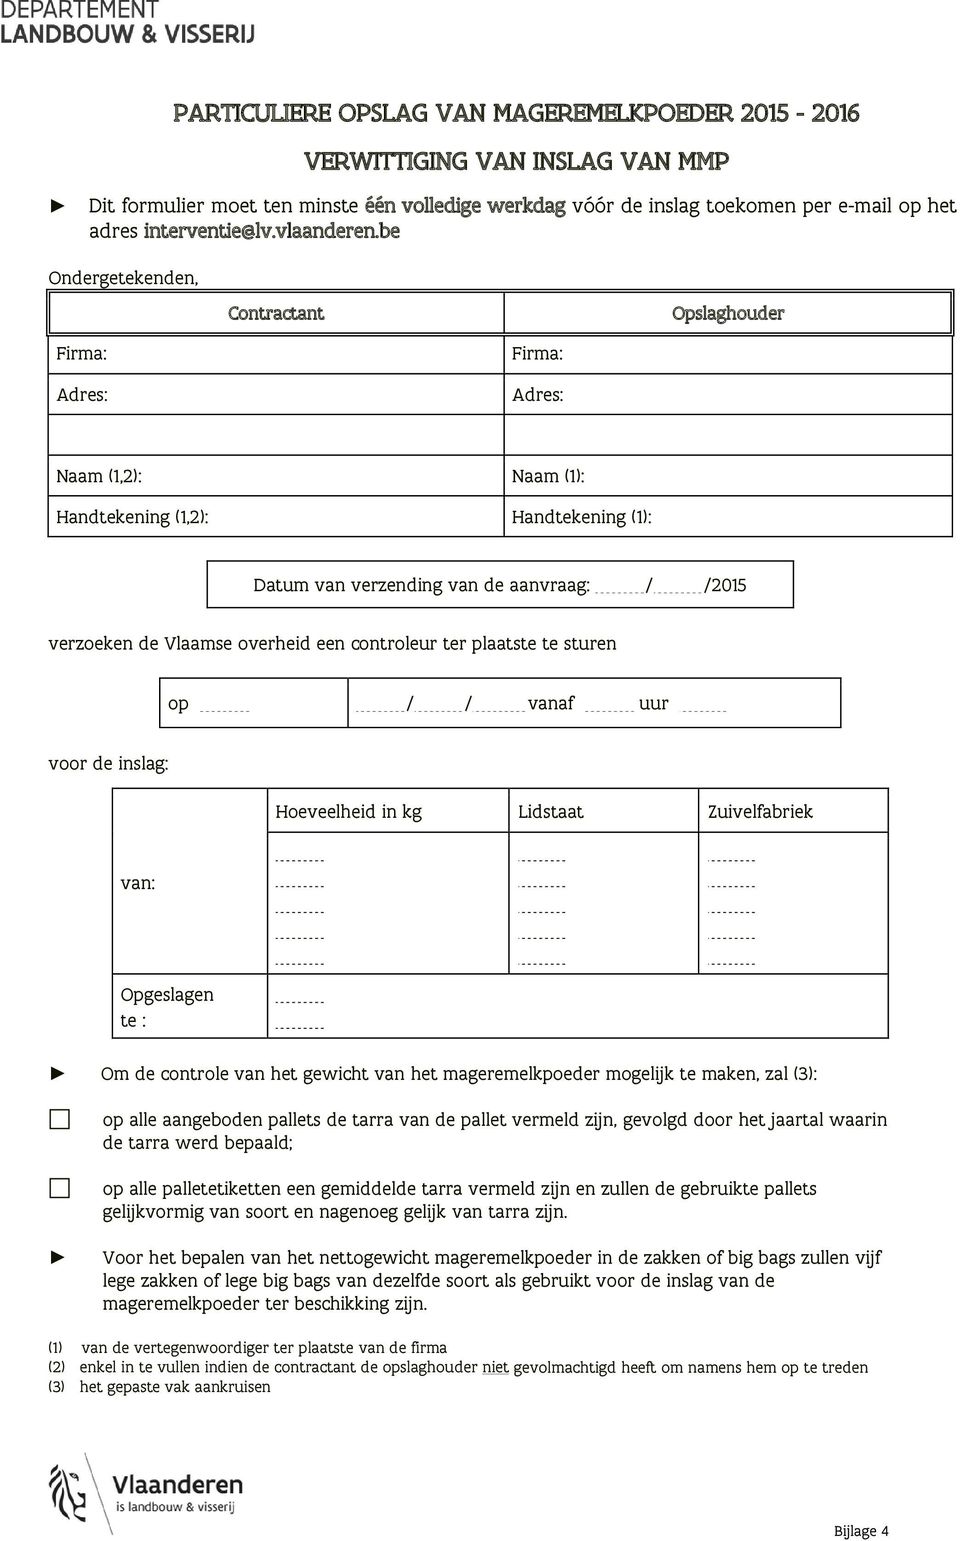 be Ondergetekenden, Contractant Opslaghouder Firma: Adres: Firma: Adres: Naam (1,2): Naam (1): Handtekening (1,2): Handtekening (1): Datum van verzending van de aanvraag: / /2015 verzoeken de Vlaamse